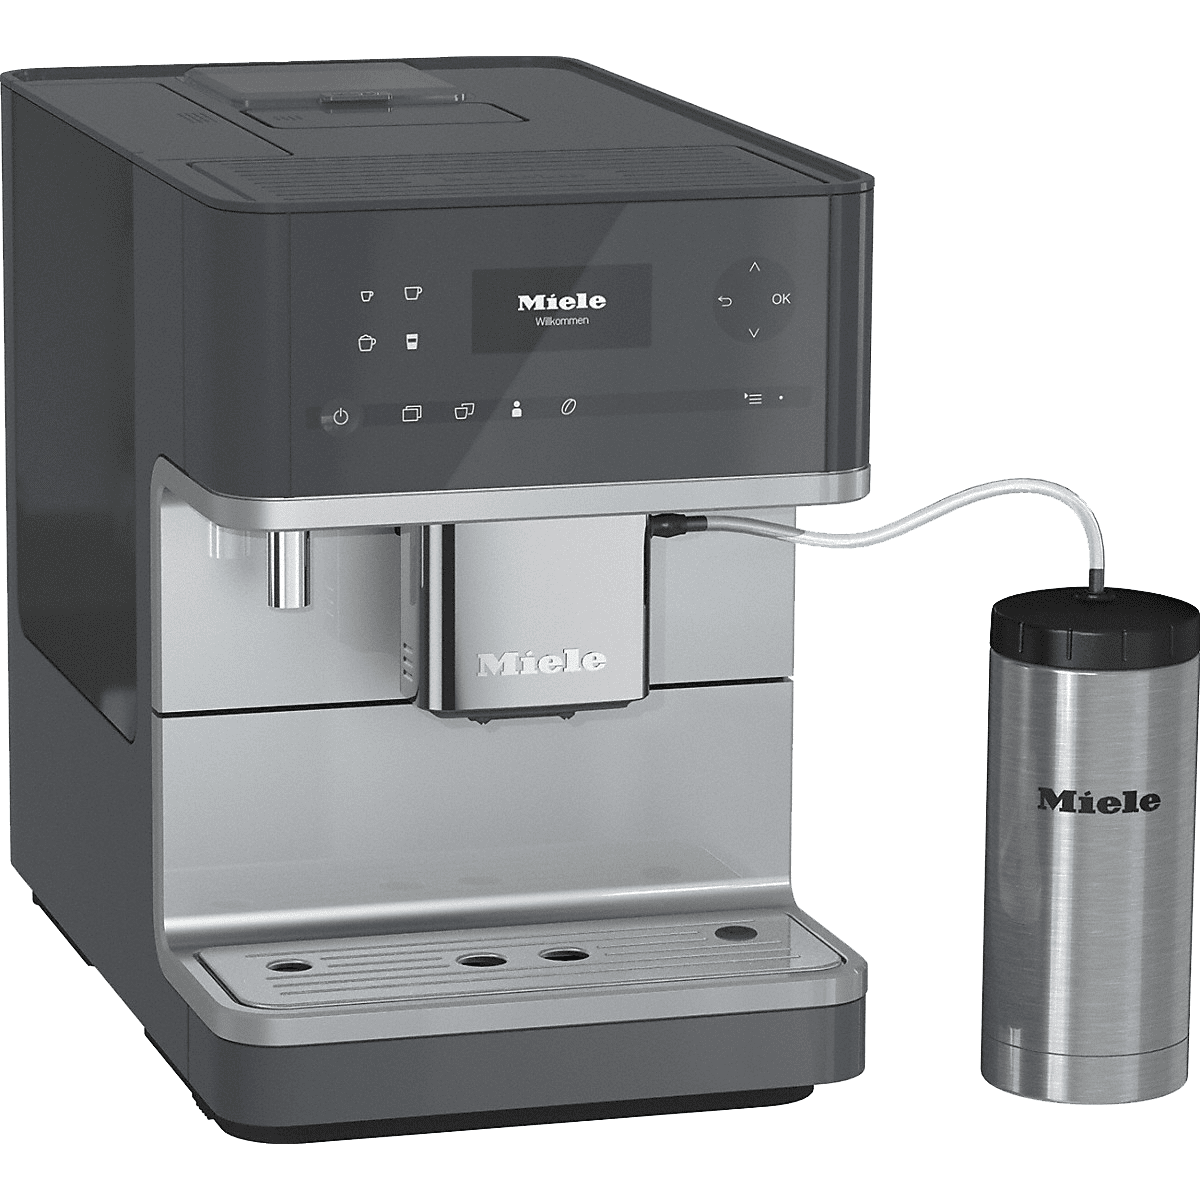 Miele Cm6350 Countertop Espresso Machine - Graphite Gray